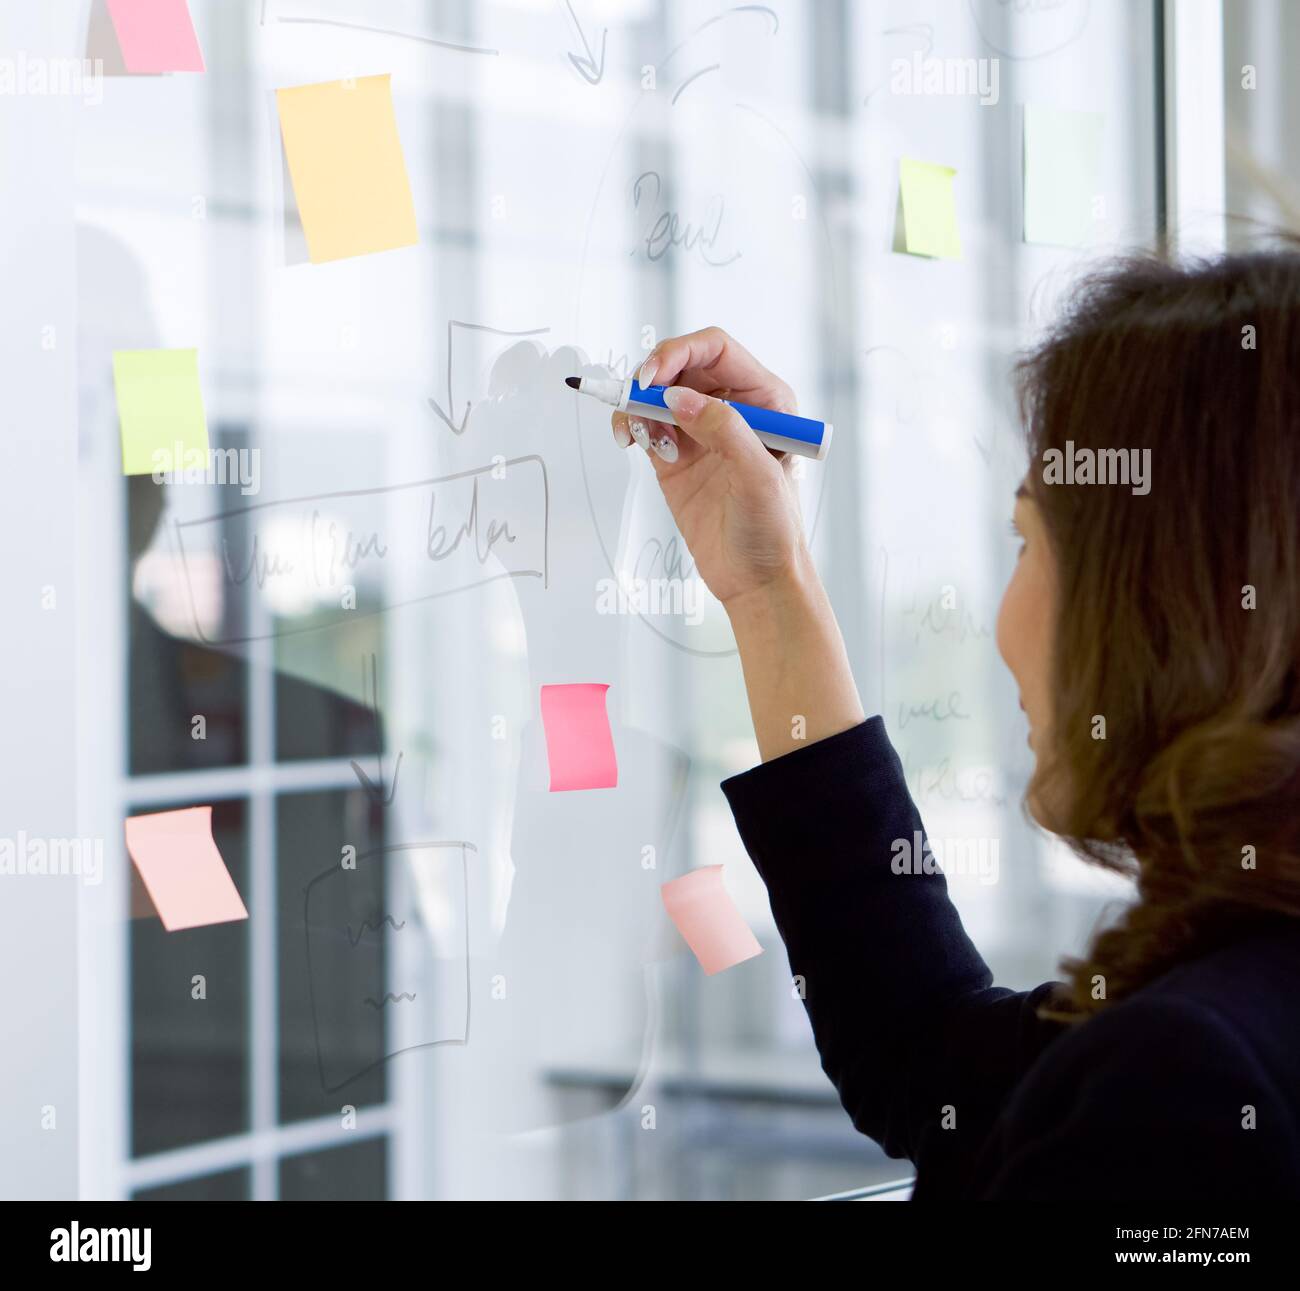 Donna di affari in vestito nero che disegna una mappa mentale per il programma di affari sul vetro. Sul pannello di vetro era presente una carta per appunti. Foto Stock